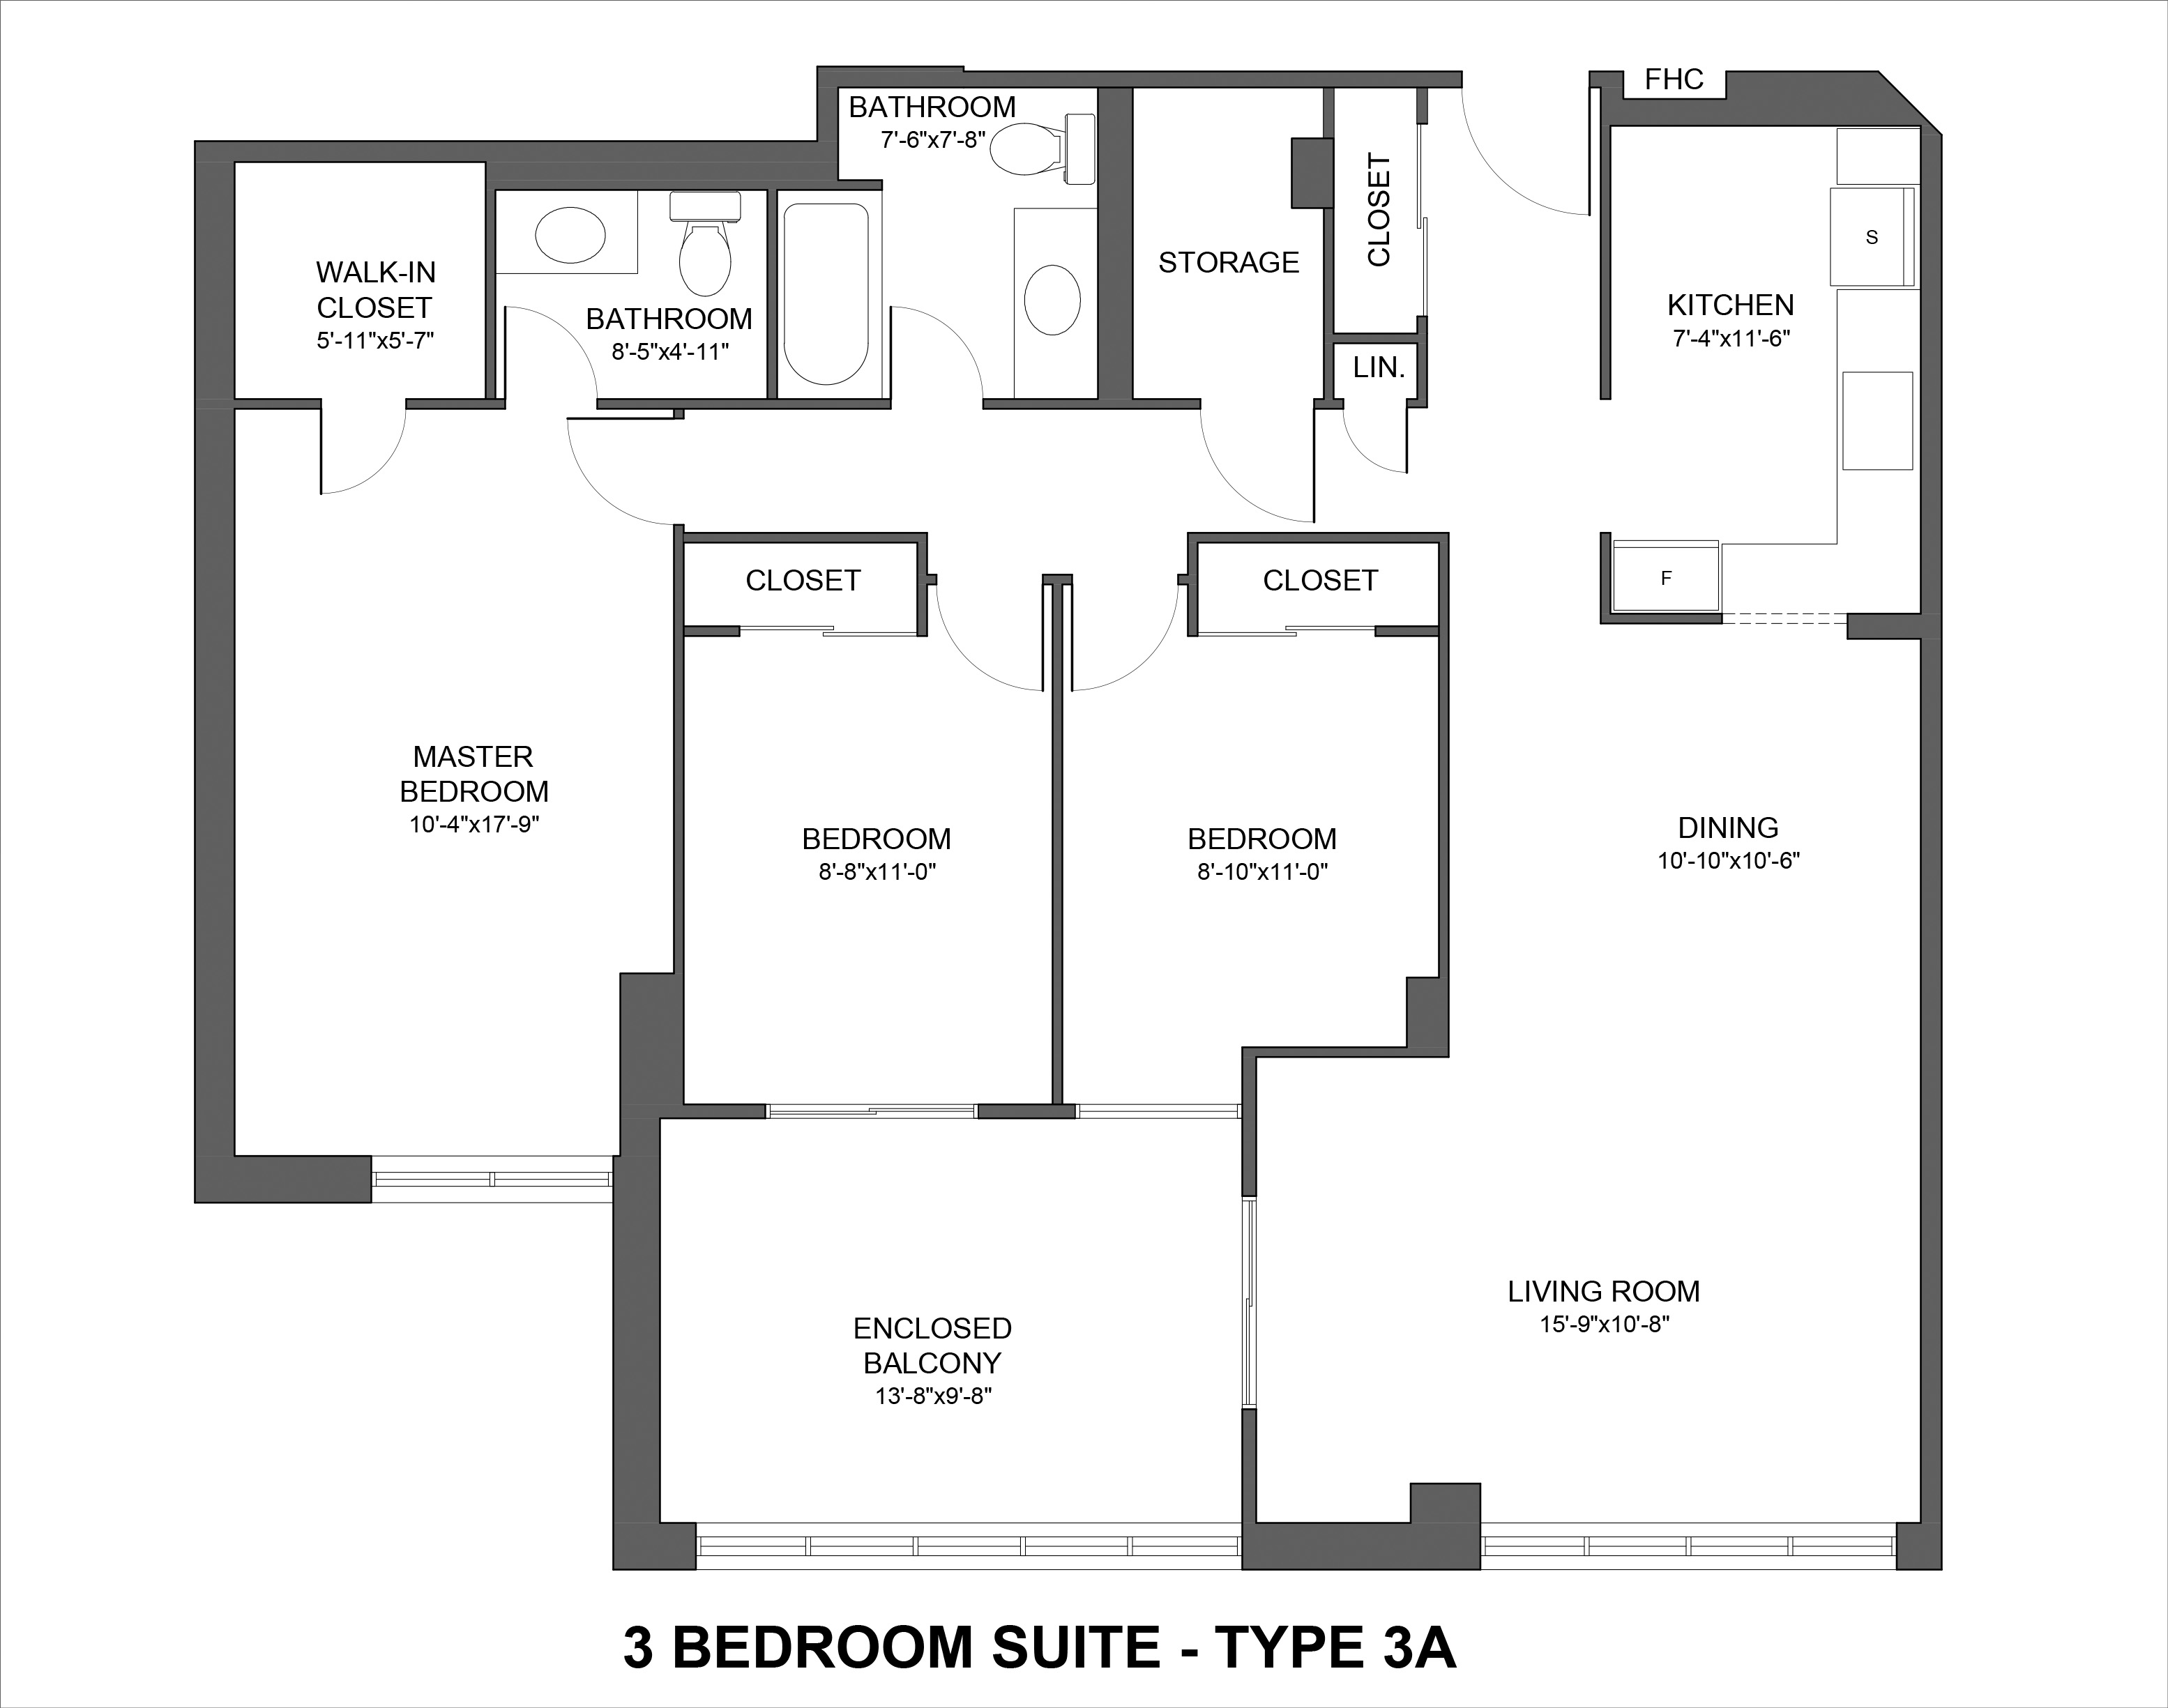 Floorplan for Type 3A 3 bedroom suite